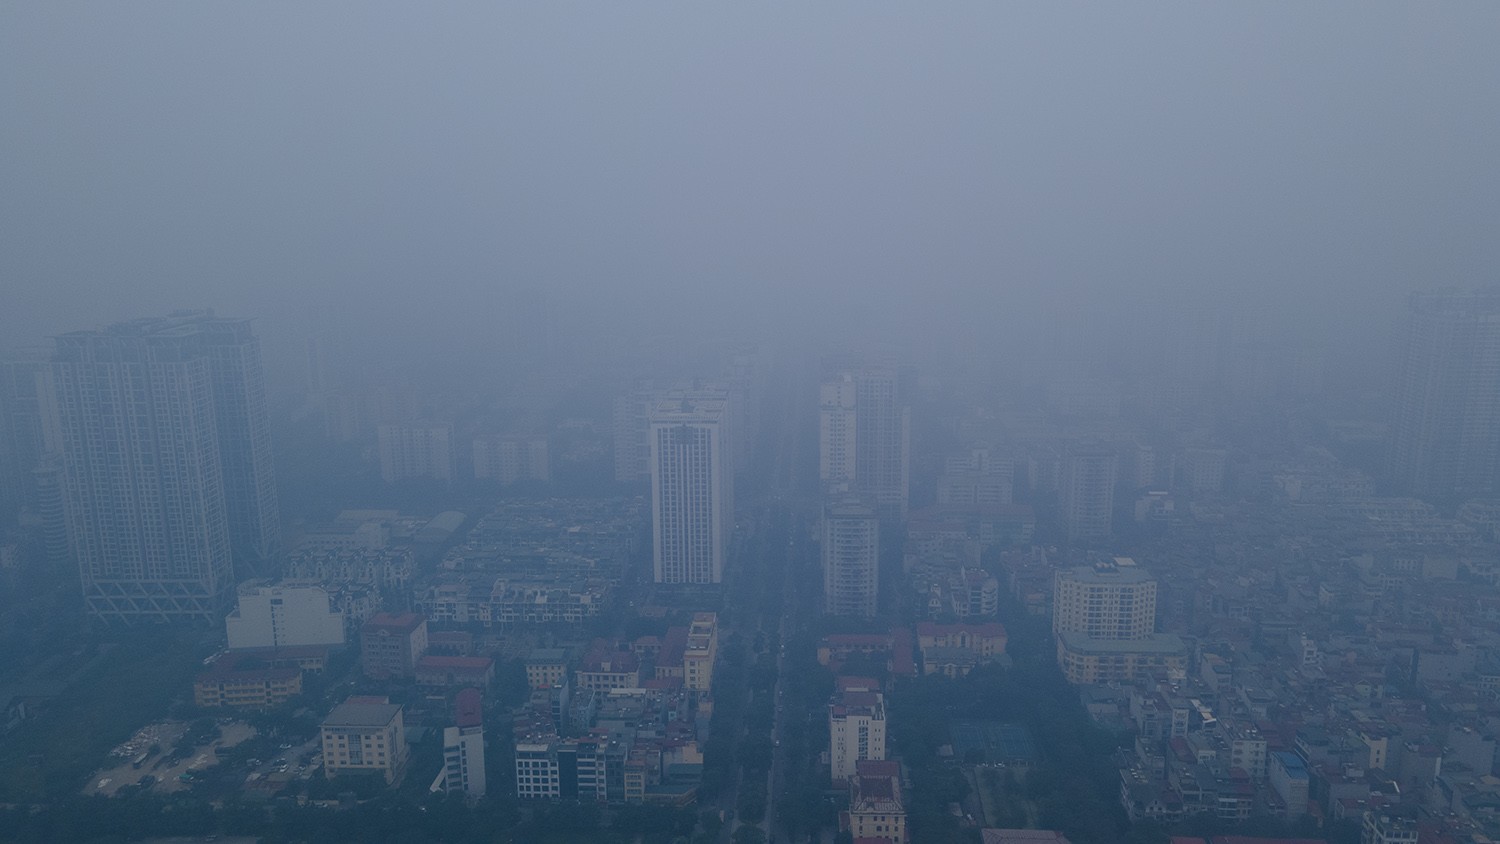 Trung tâm Hà Nội chìm trong sương mù dày đặc, chất lượng không khí nhiều nơi ở “mức đỏ” - 6